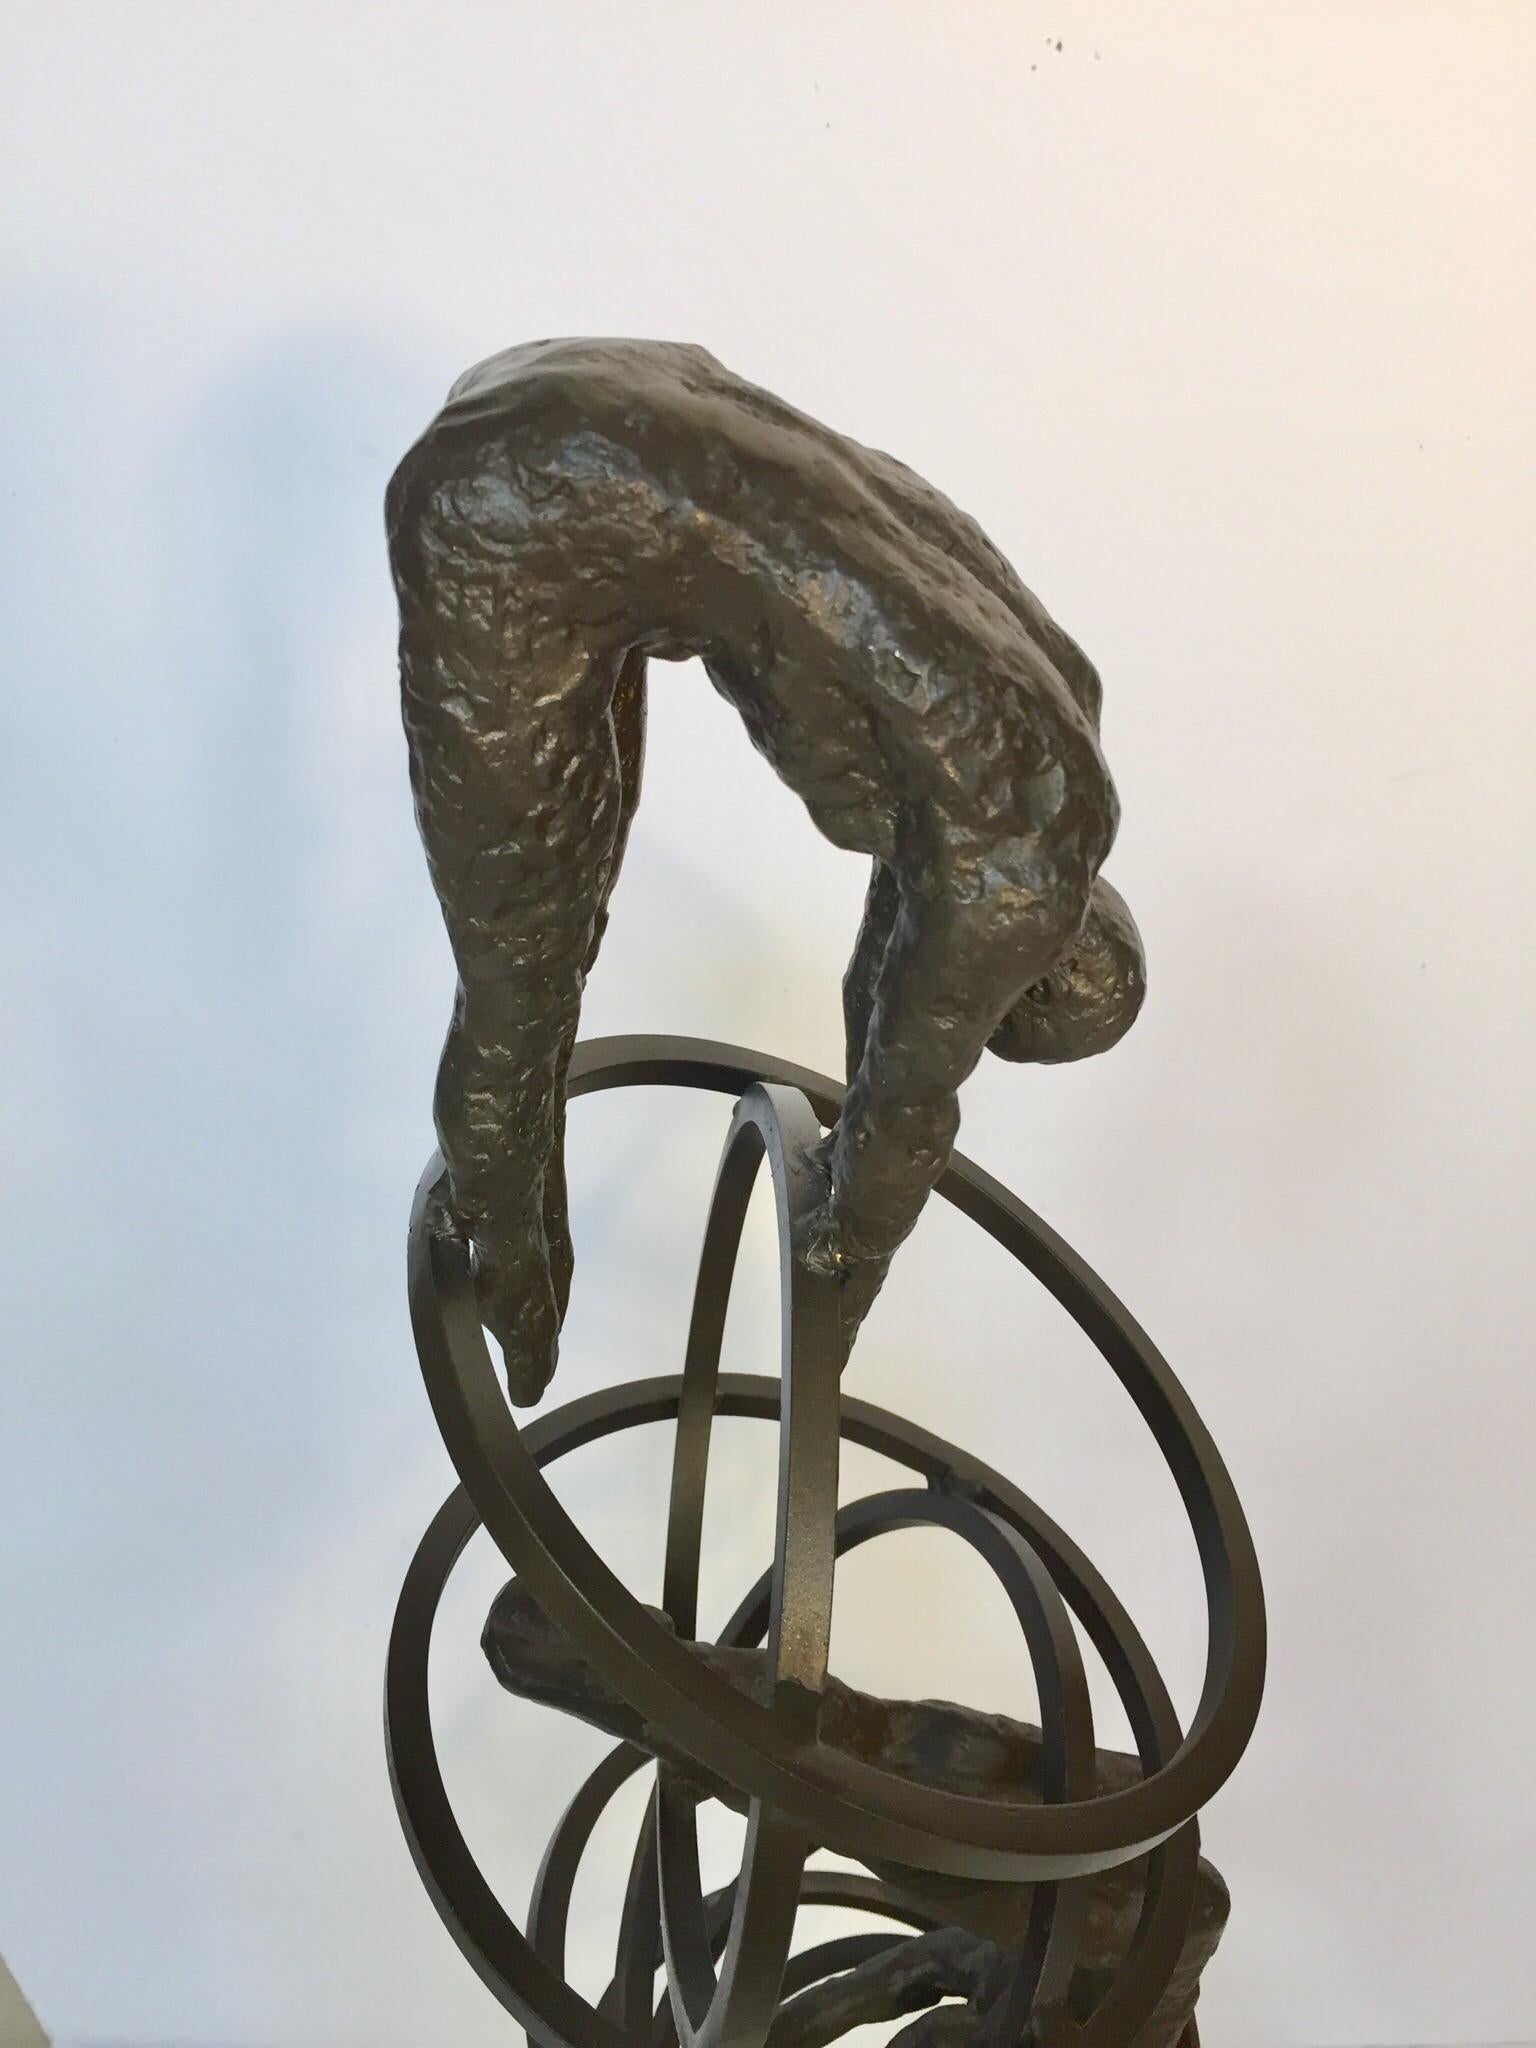 Vintage Modern Gusseisen Brutalist Stil Skulptur von Tauchern auf Ringe Skulptur auf Marmor Stand.
Diese hübsche Taucherskulptur aus Gusseisen ist eine Hommage an die flüssige Präzision eines professionellen Tauchers.
Maße: 12 Zoll x 8 Zoll breit